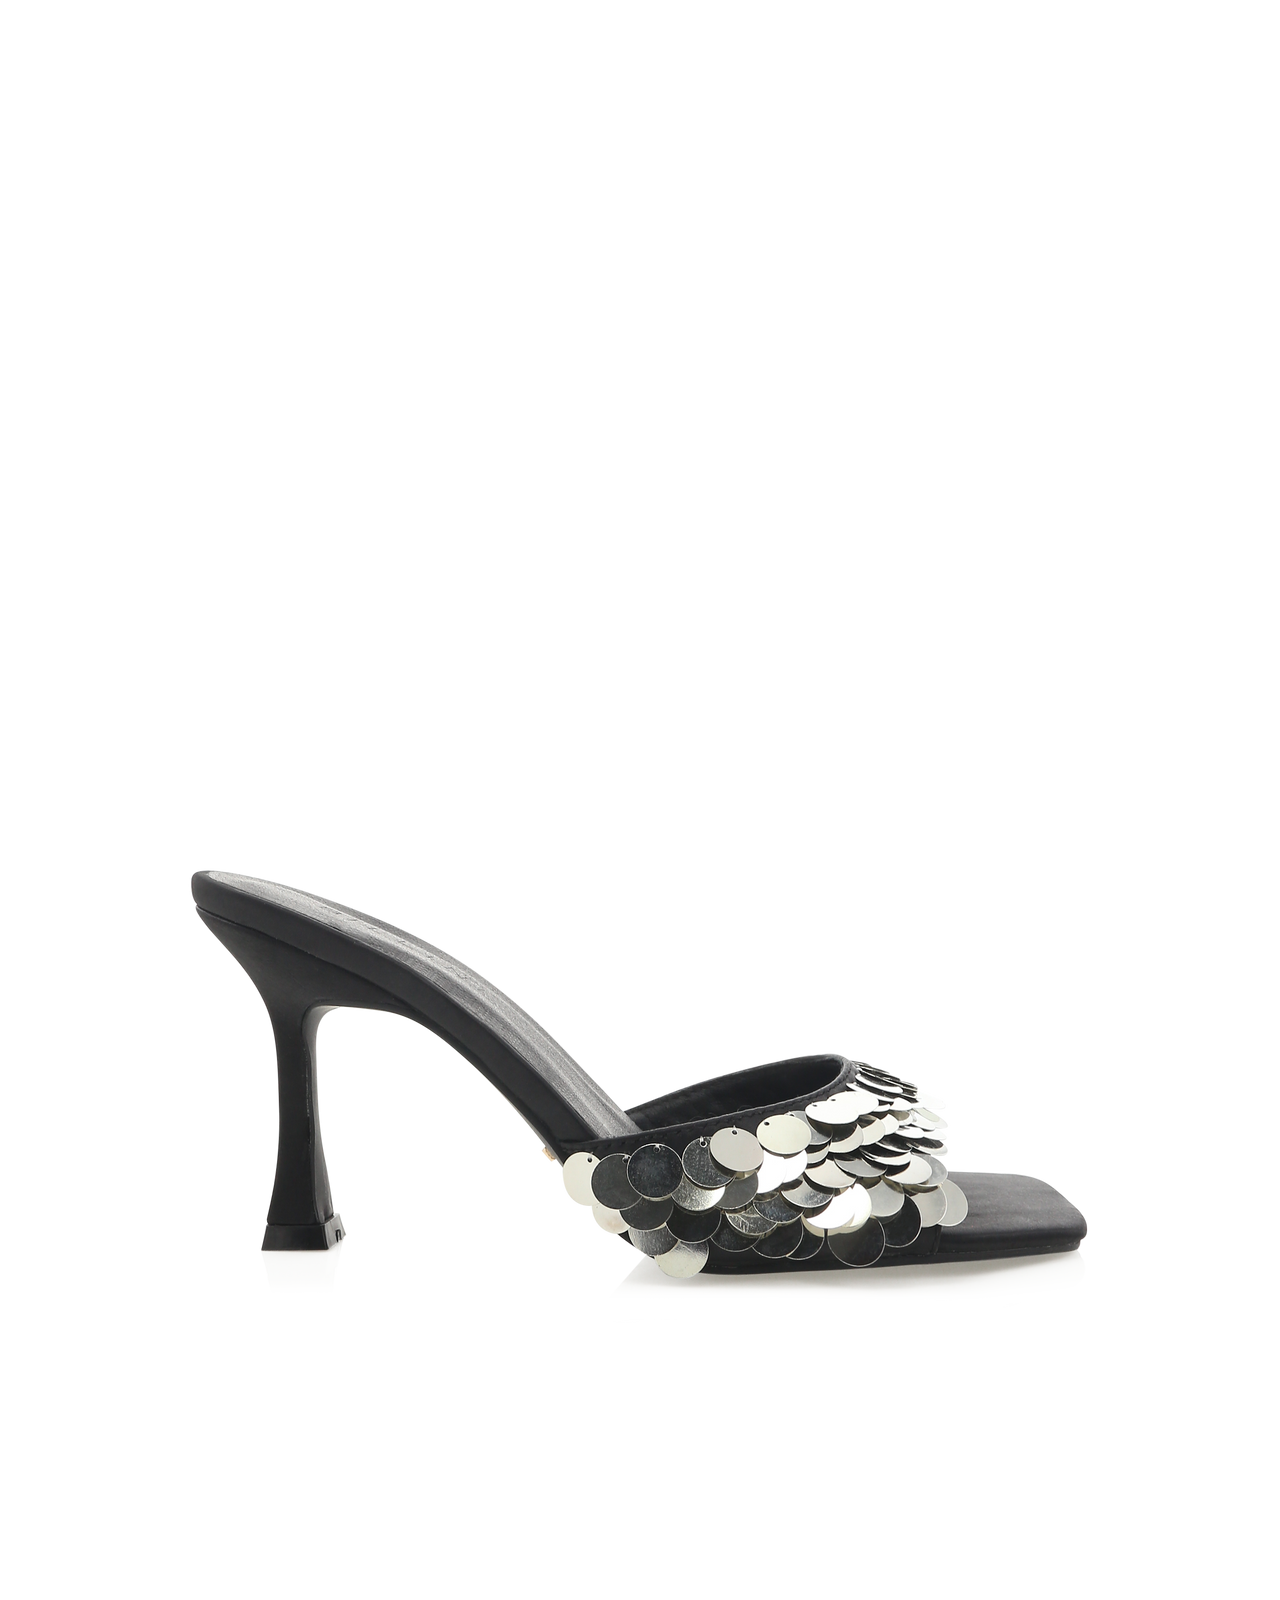 Qirin Black Satin Heel, Heel Shoe by Billini | LIT Boutique